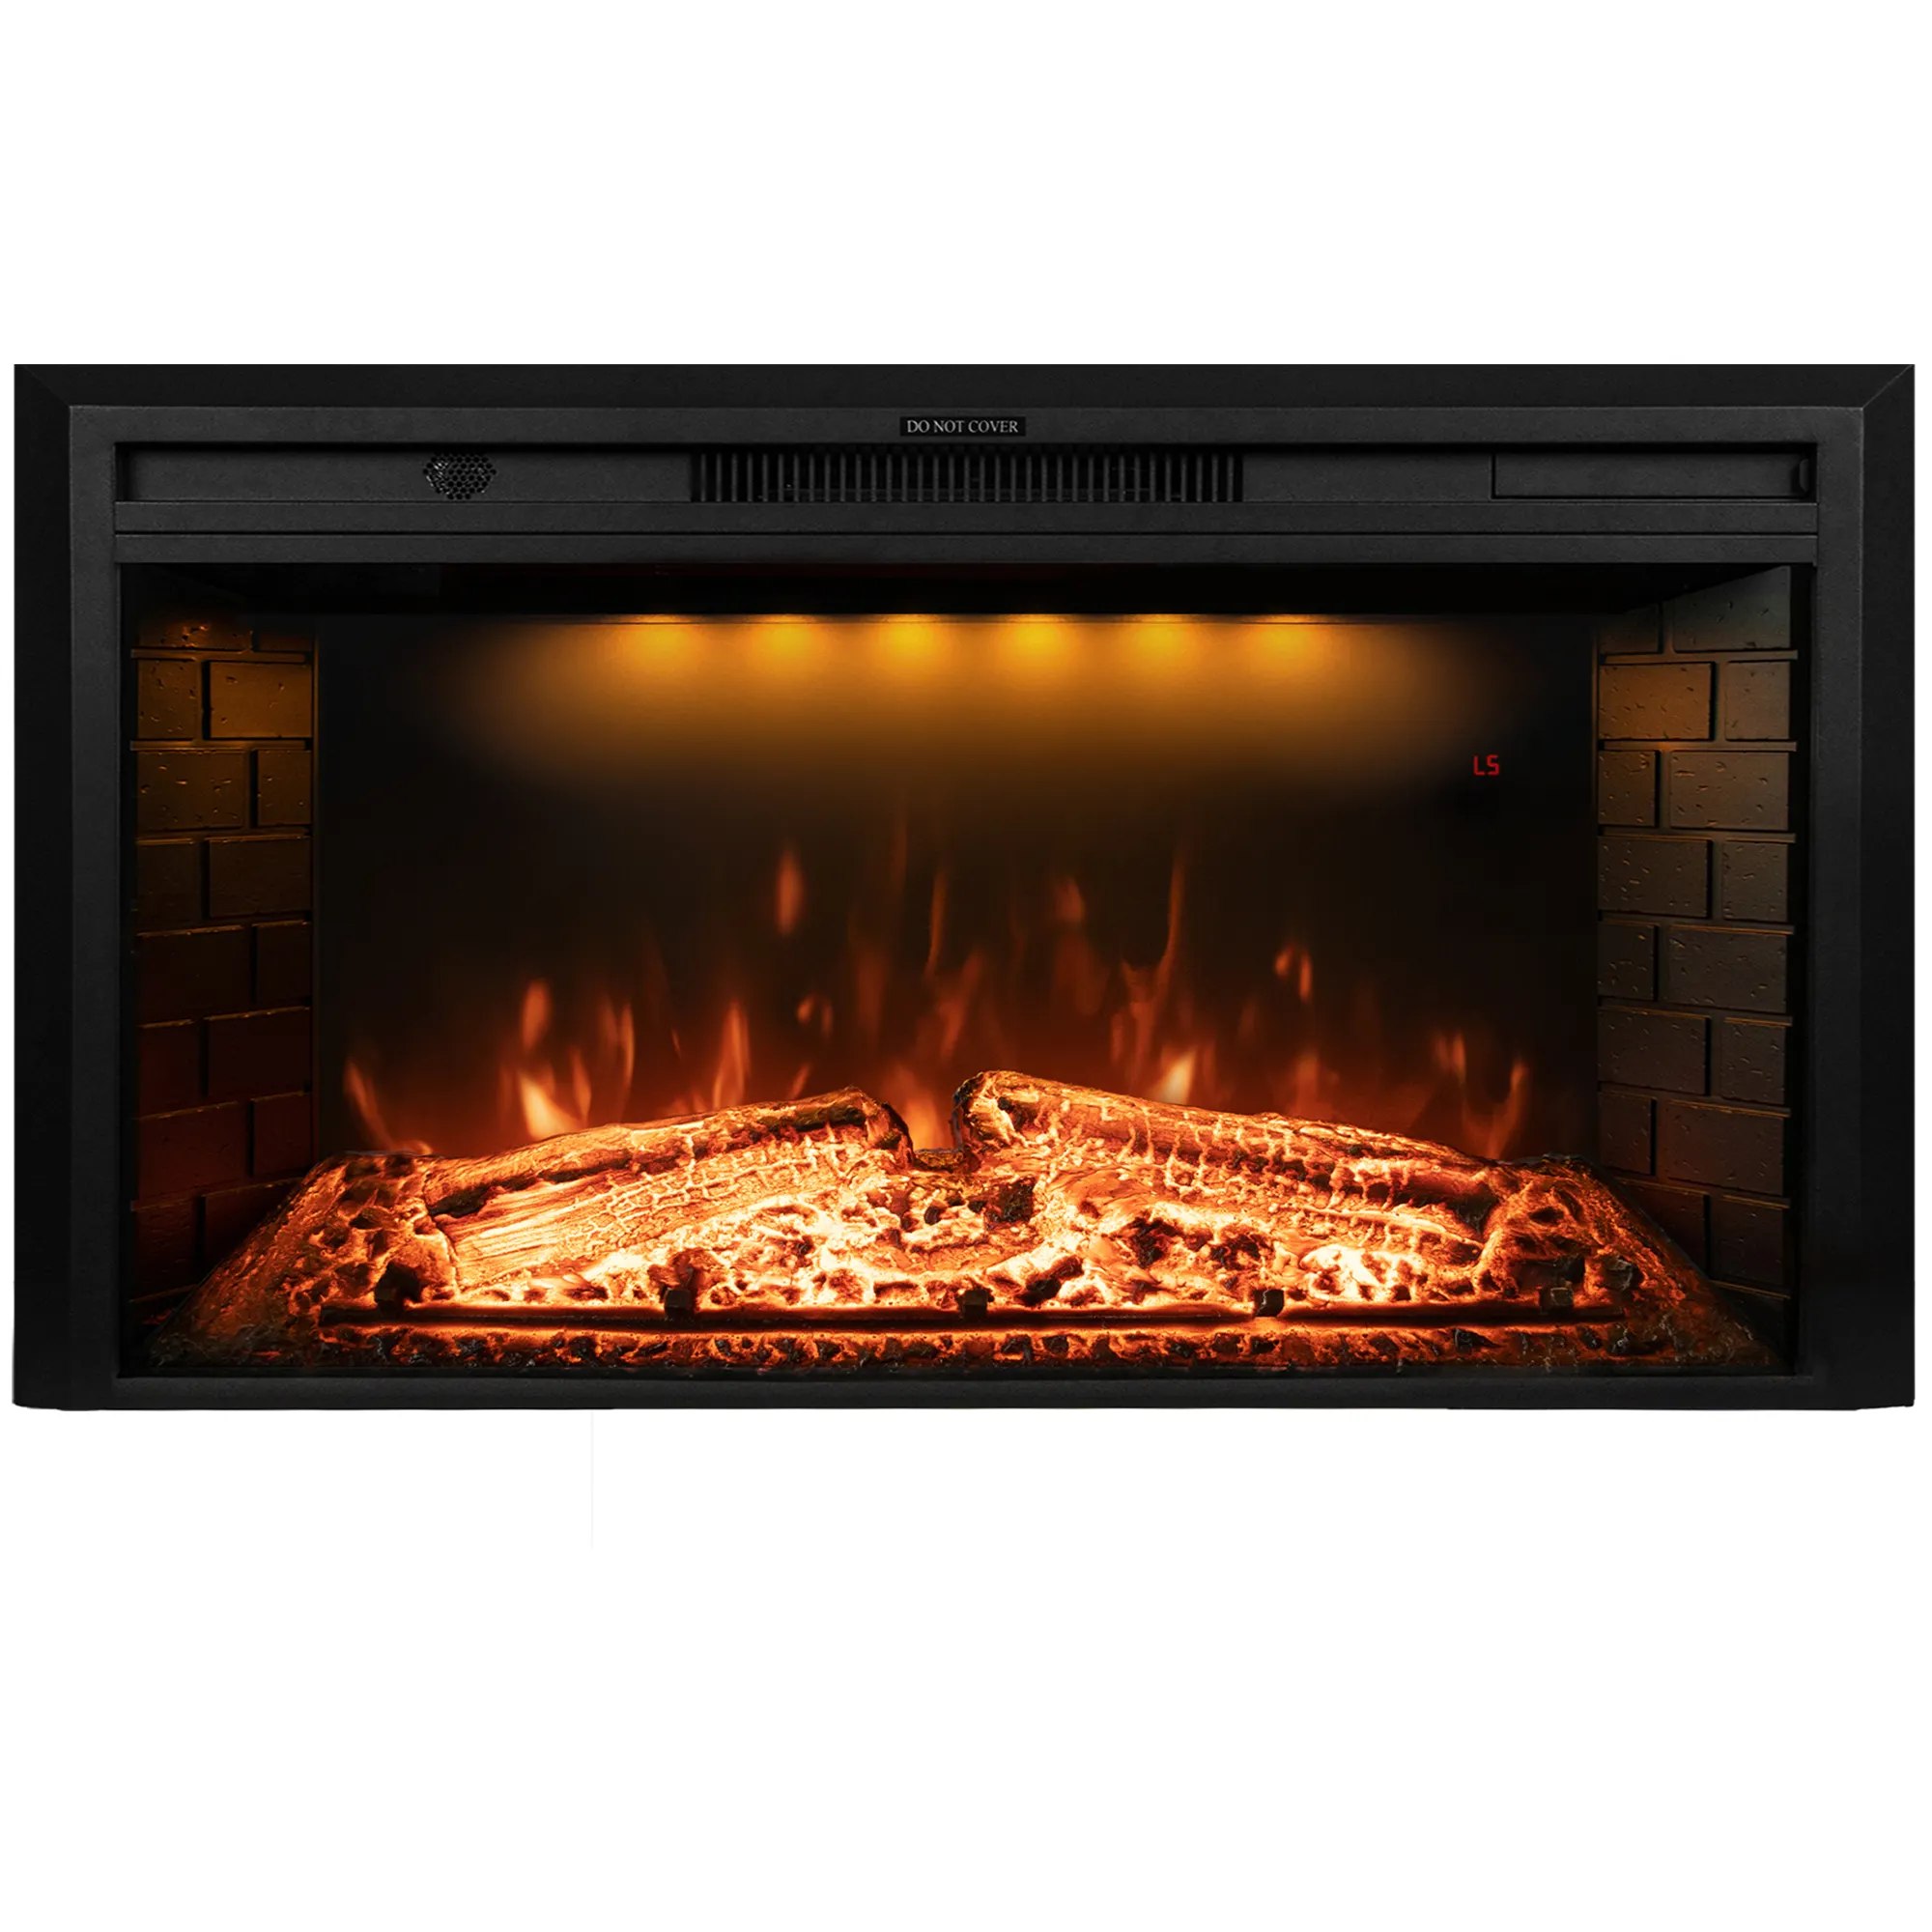 Luxstar aquecedor elétrico de 33 polegadas, aquecedores de caracol clássicos com led, chamas realistas e som de queima